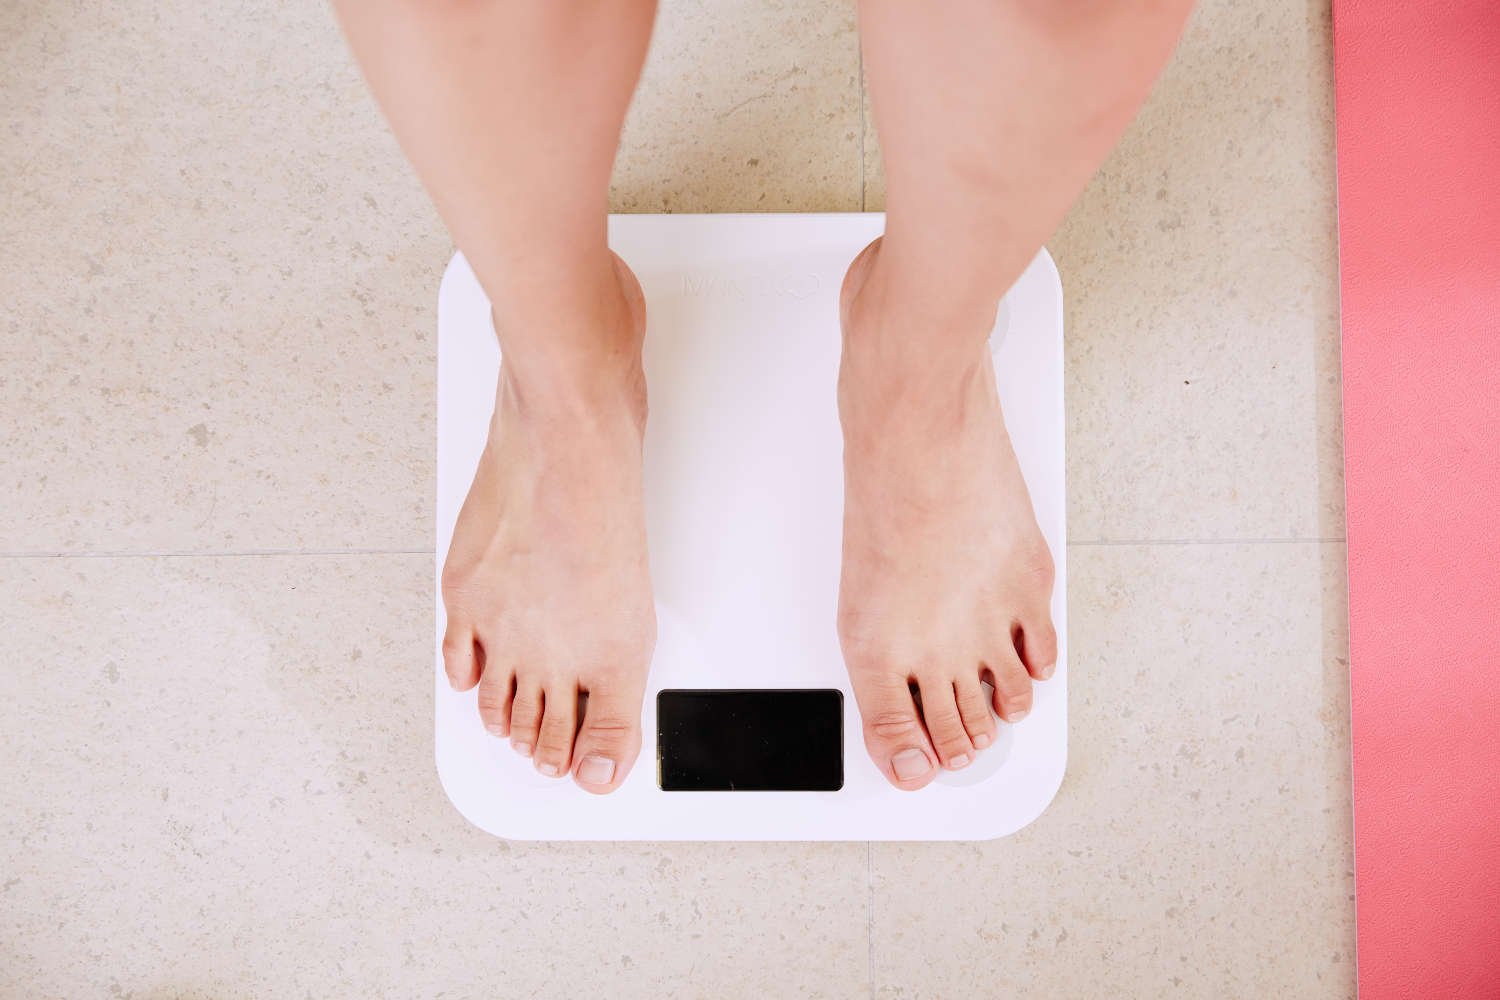 svorio metimas yra psichinis iššūkis kaip maitintis sveikiau ir mesti svorį